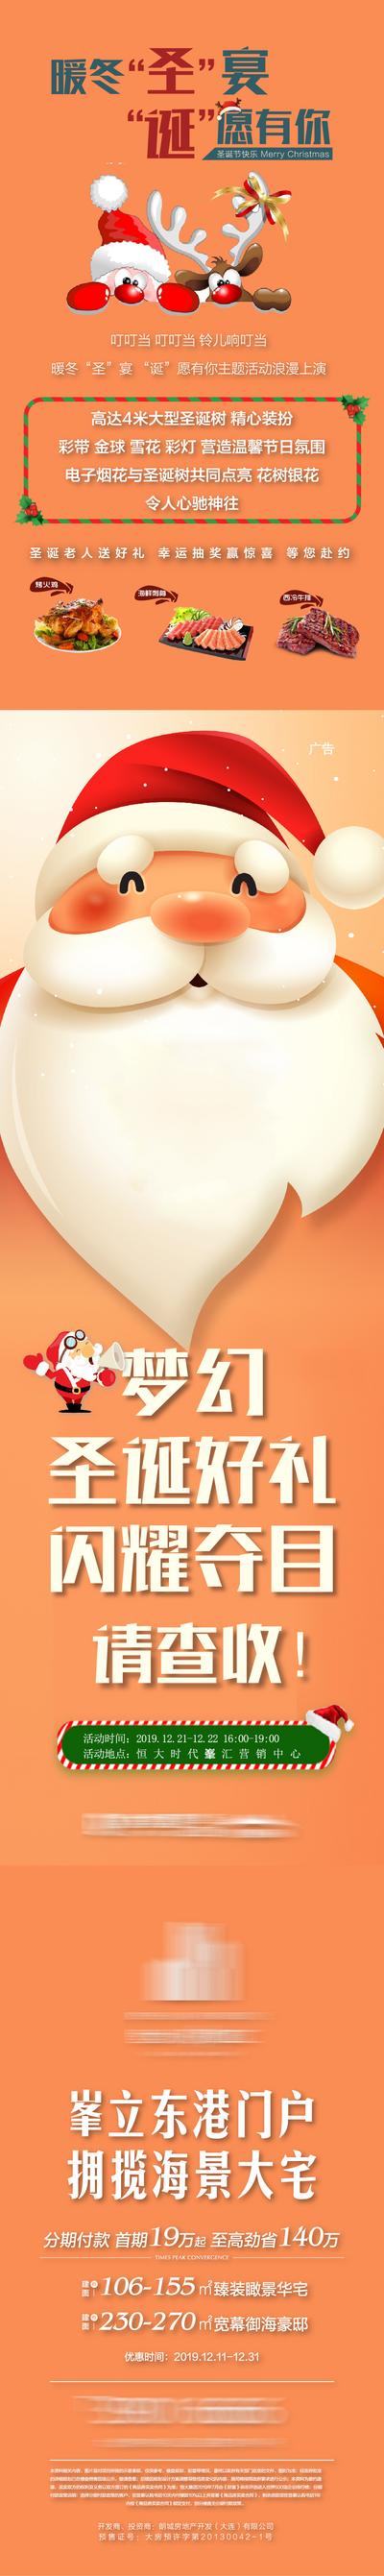 南门网 海报  长图   公历节日   圣诞节  圣诞老人 活动